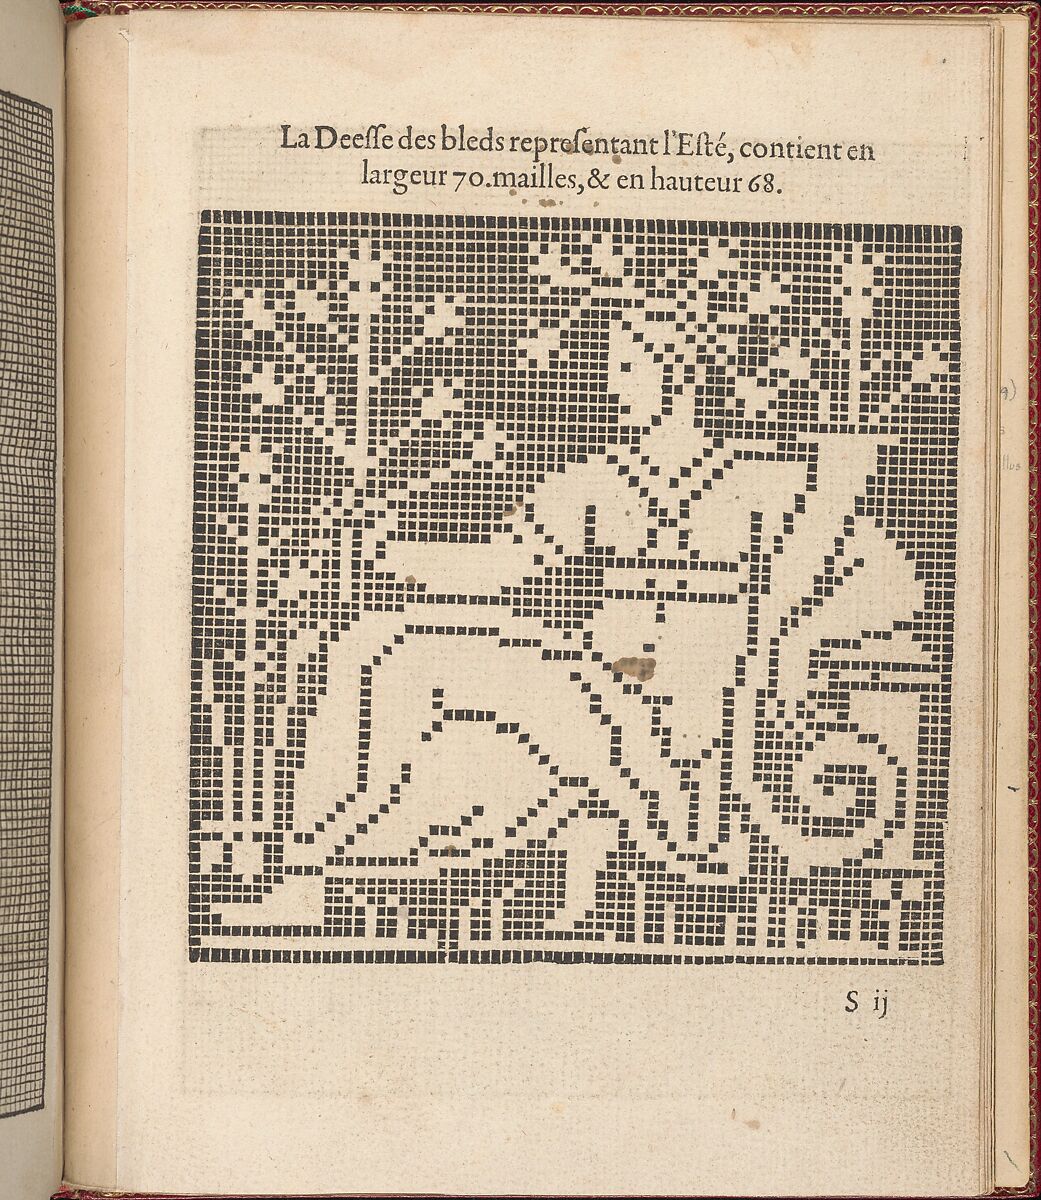 Les Singuliers et Nouveaux Portraicts... page 70 (recto), Federico de Vinciolo (Italian, active Paris, ca. 1587–99), Woodcut 